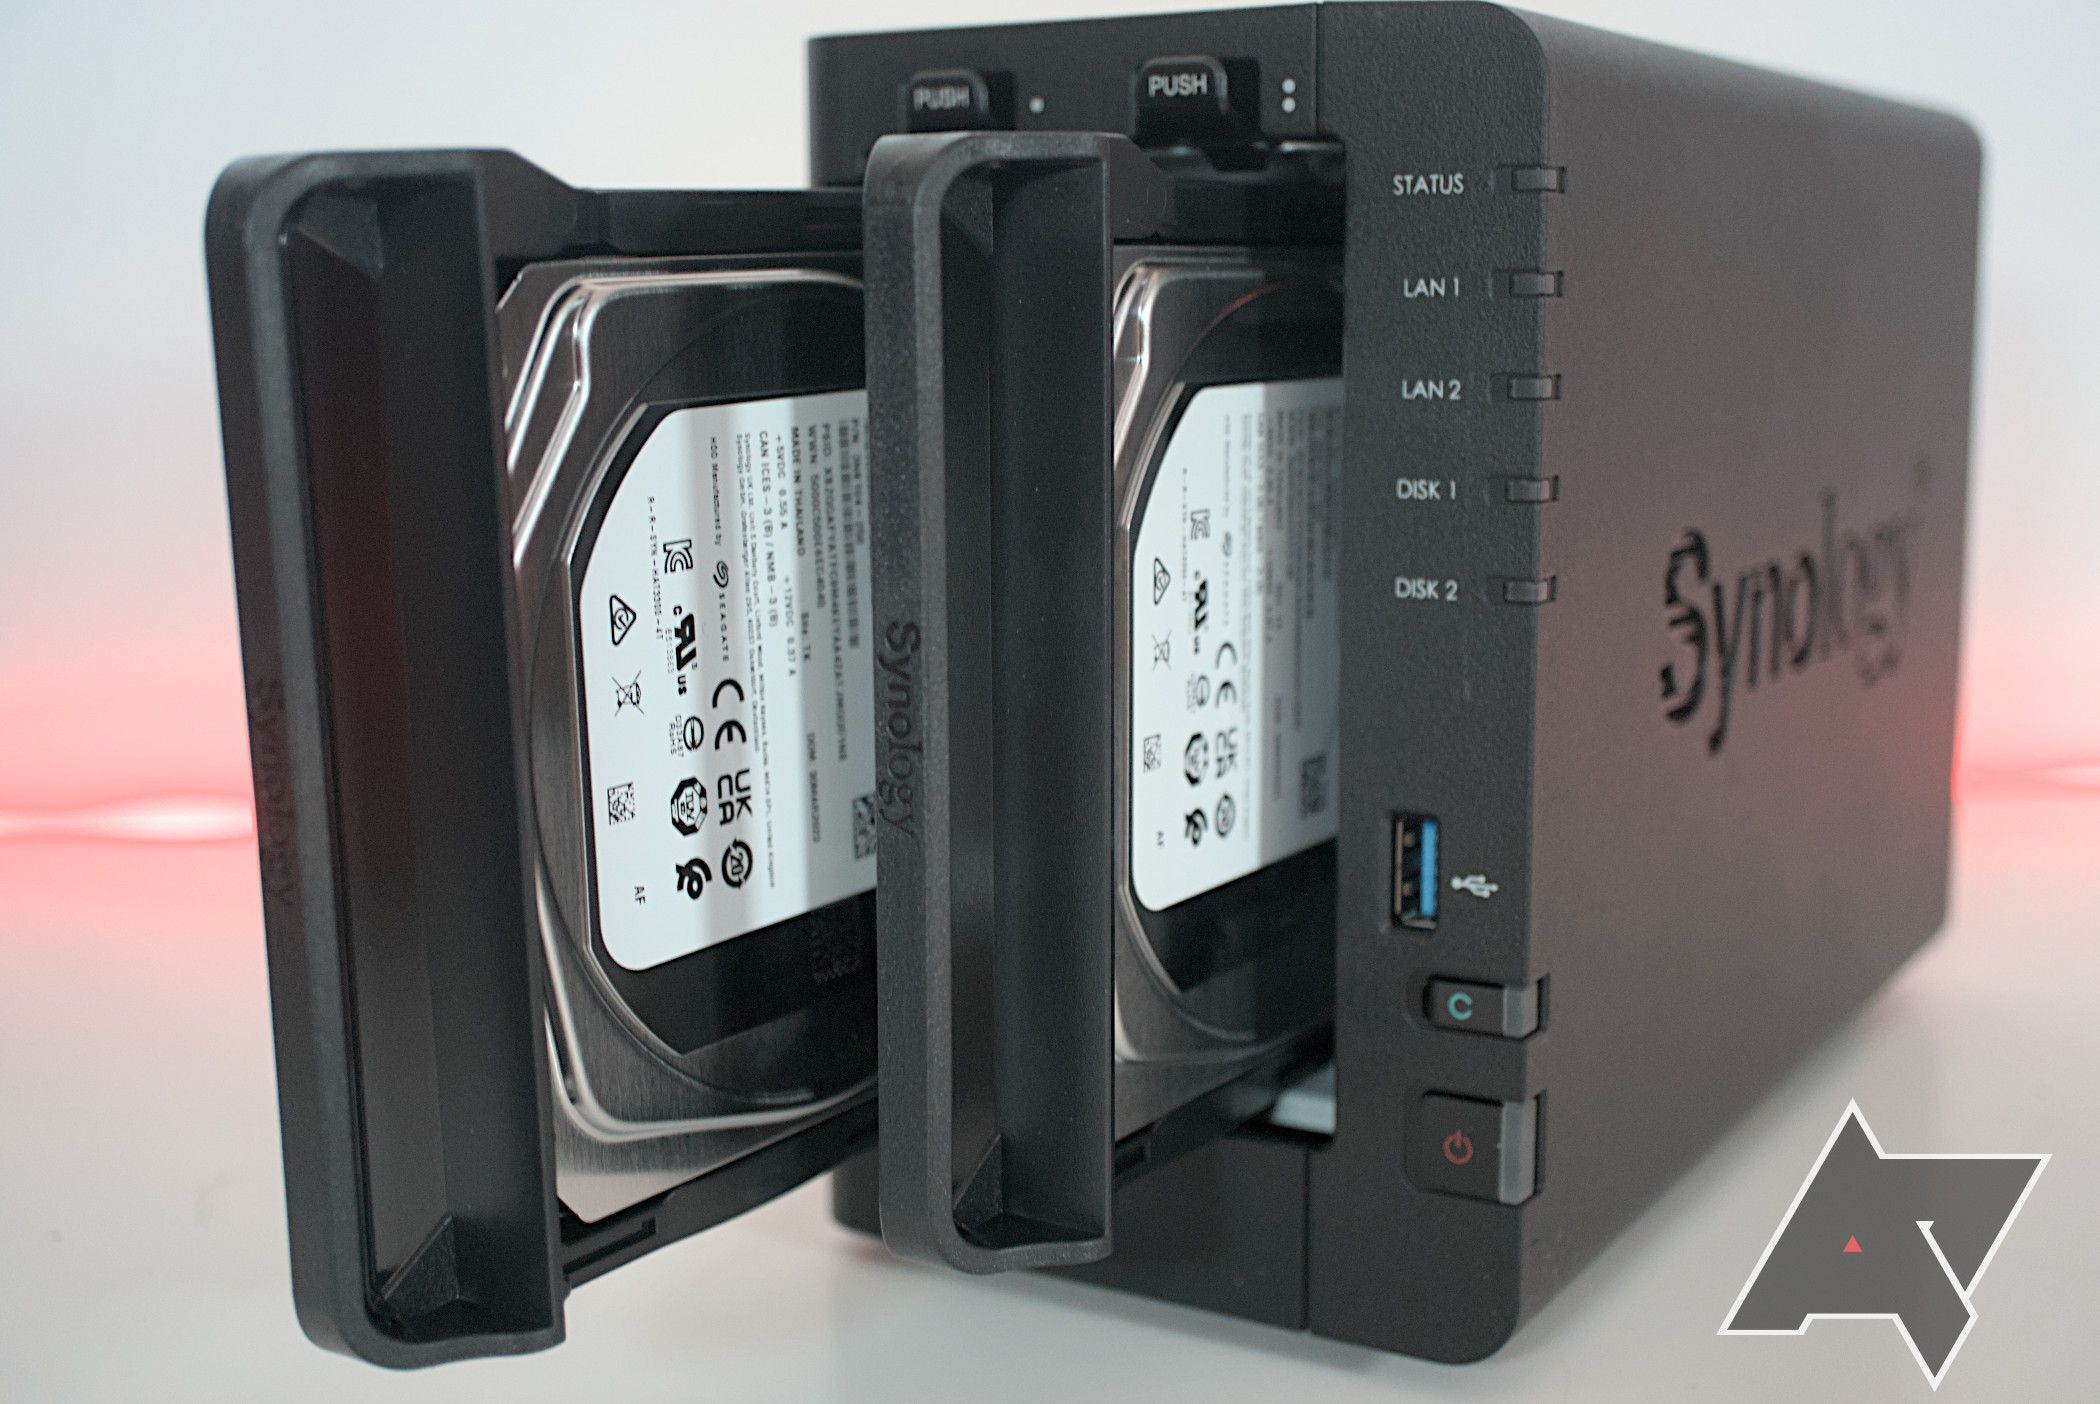 Instalando unidades dentro do Synology DiskStation DS224+